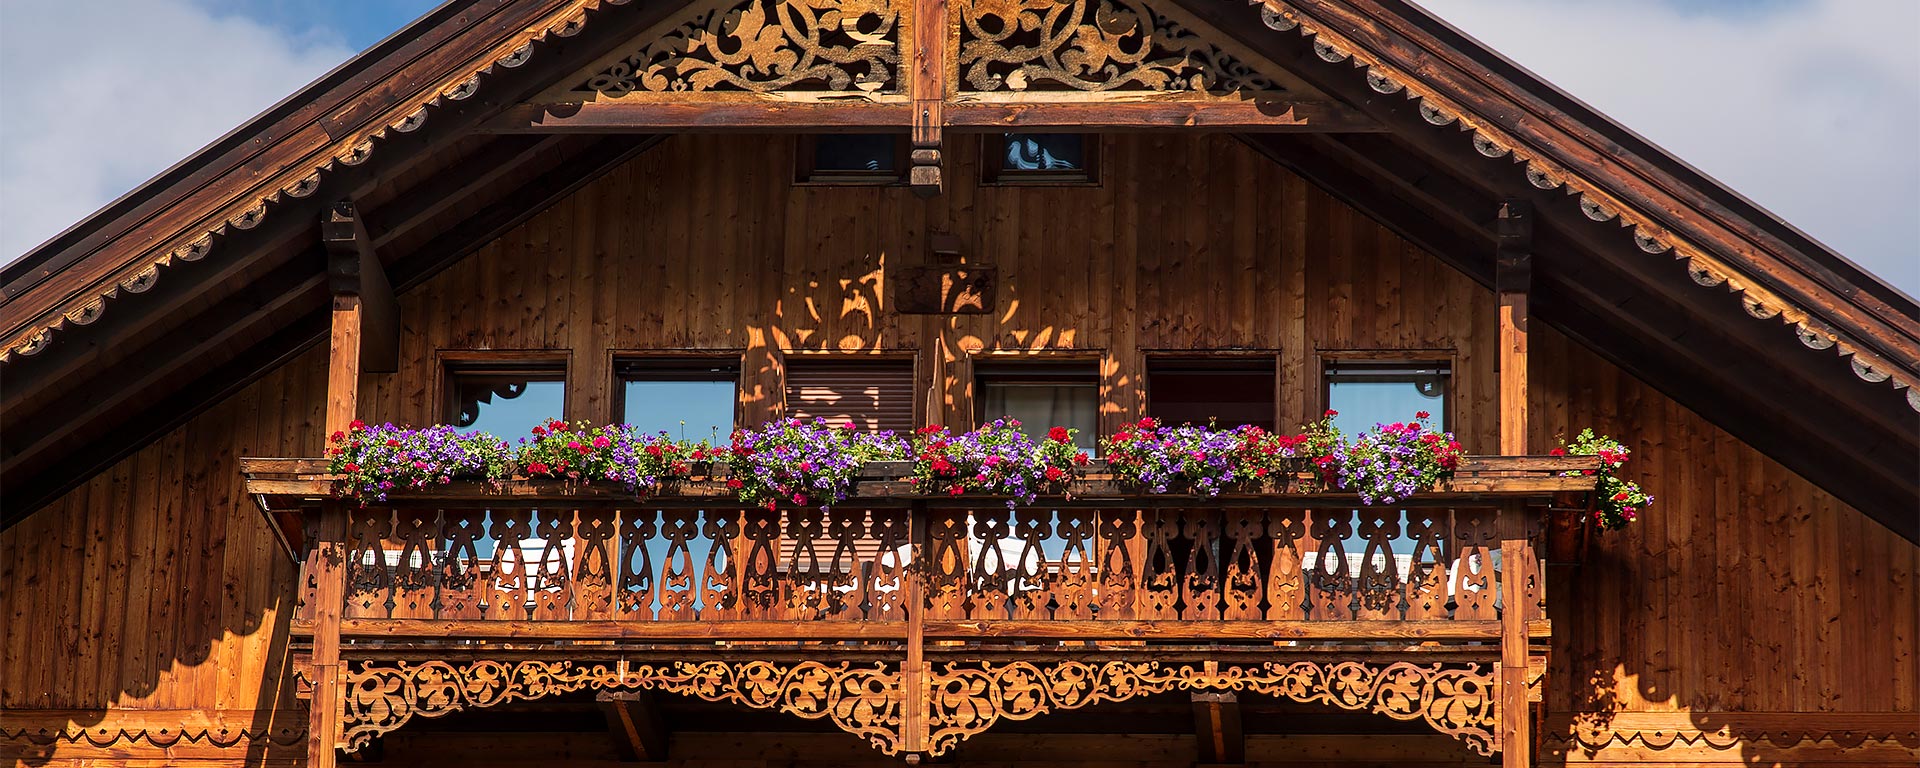 Facciata di un elegante hotel di San Vigilio di Marebbe costruito in legno con spazioso balcone e portafiori